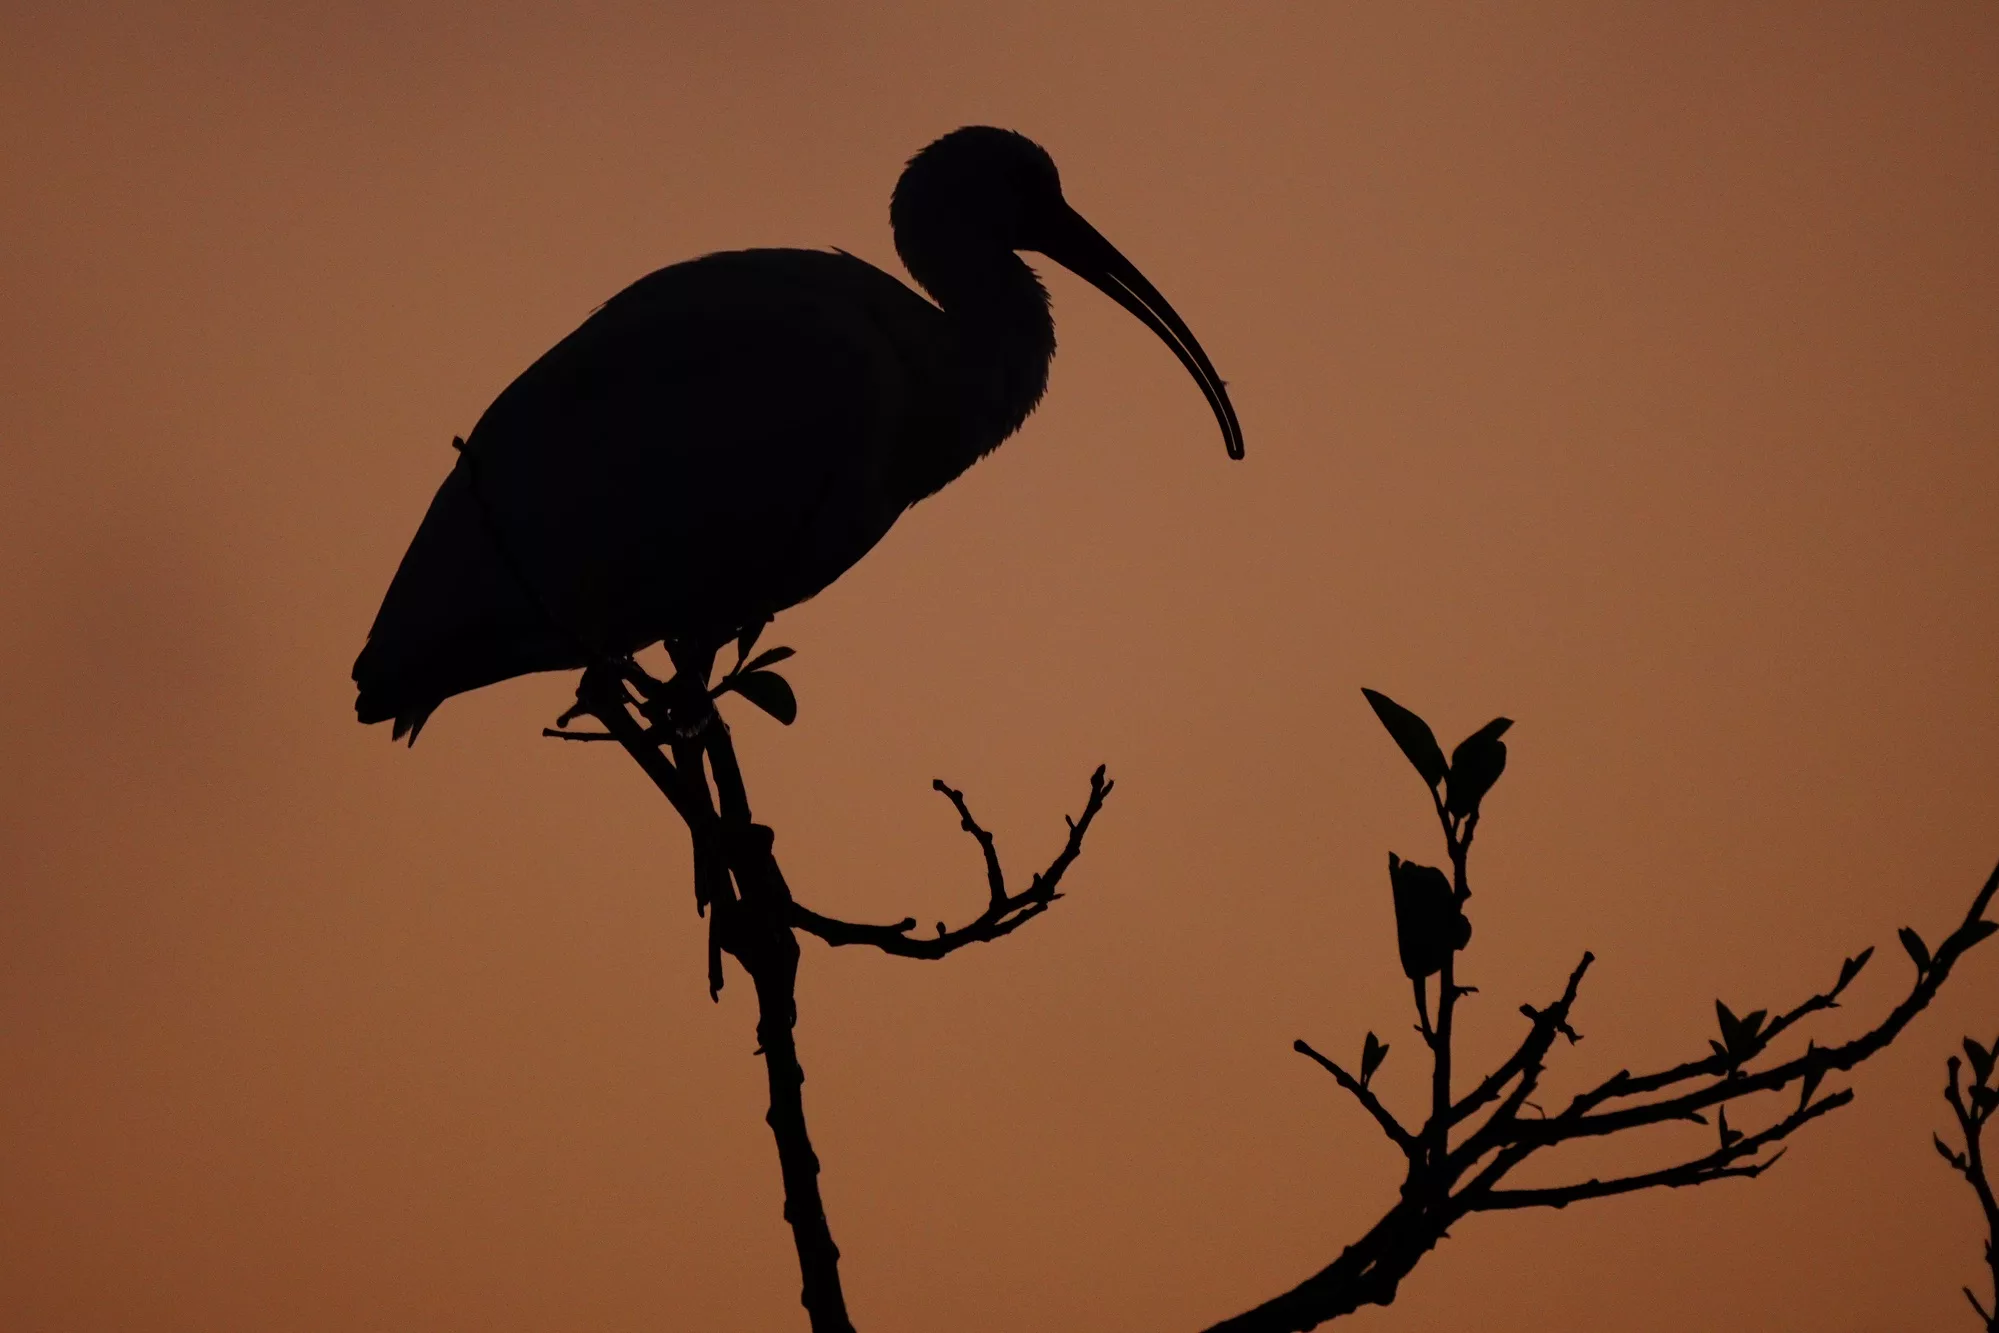 Florida birds photo tour with Don Mammoser - Ibis